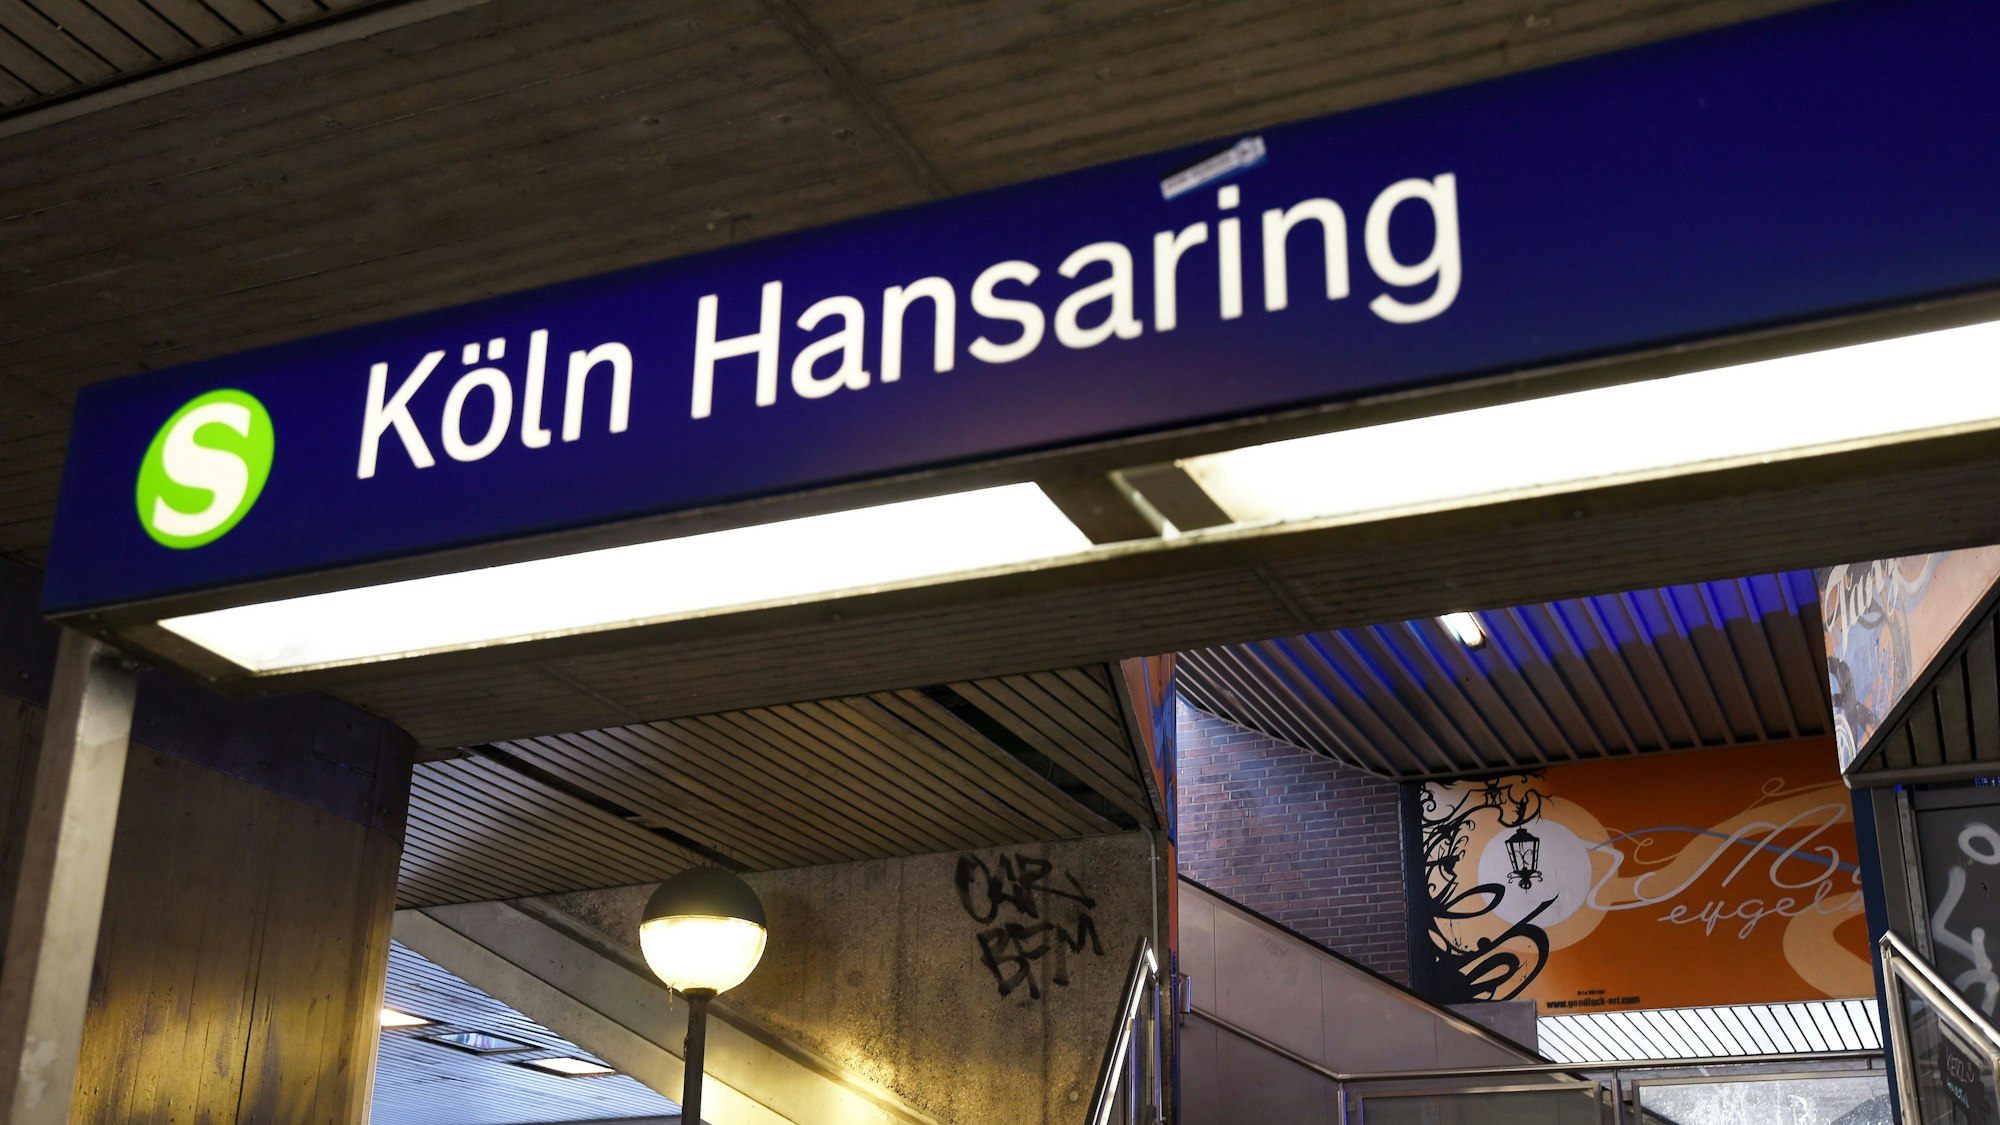 Ein S-Bahn-Schild leuchtet am Kölner Hansaring. Am Dienstagmittag (8. August) hat ein 40-Jähriger einen 55-Jährigen mit einem Faustschlag ins Gleisbett gestoßen, die Kölner Mordkommission ermittelt. (Symbolbild)